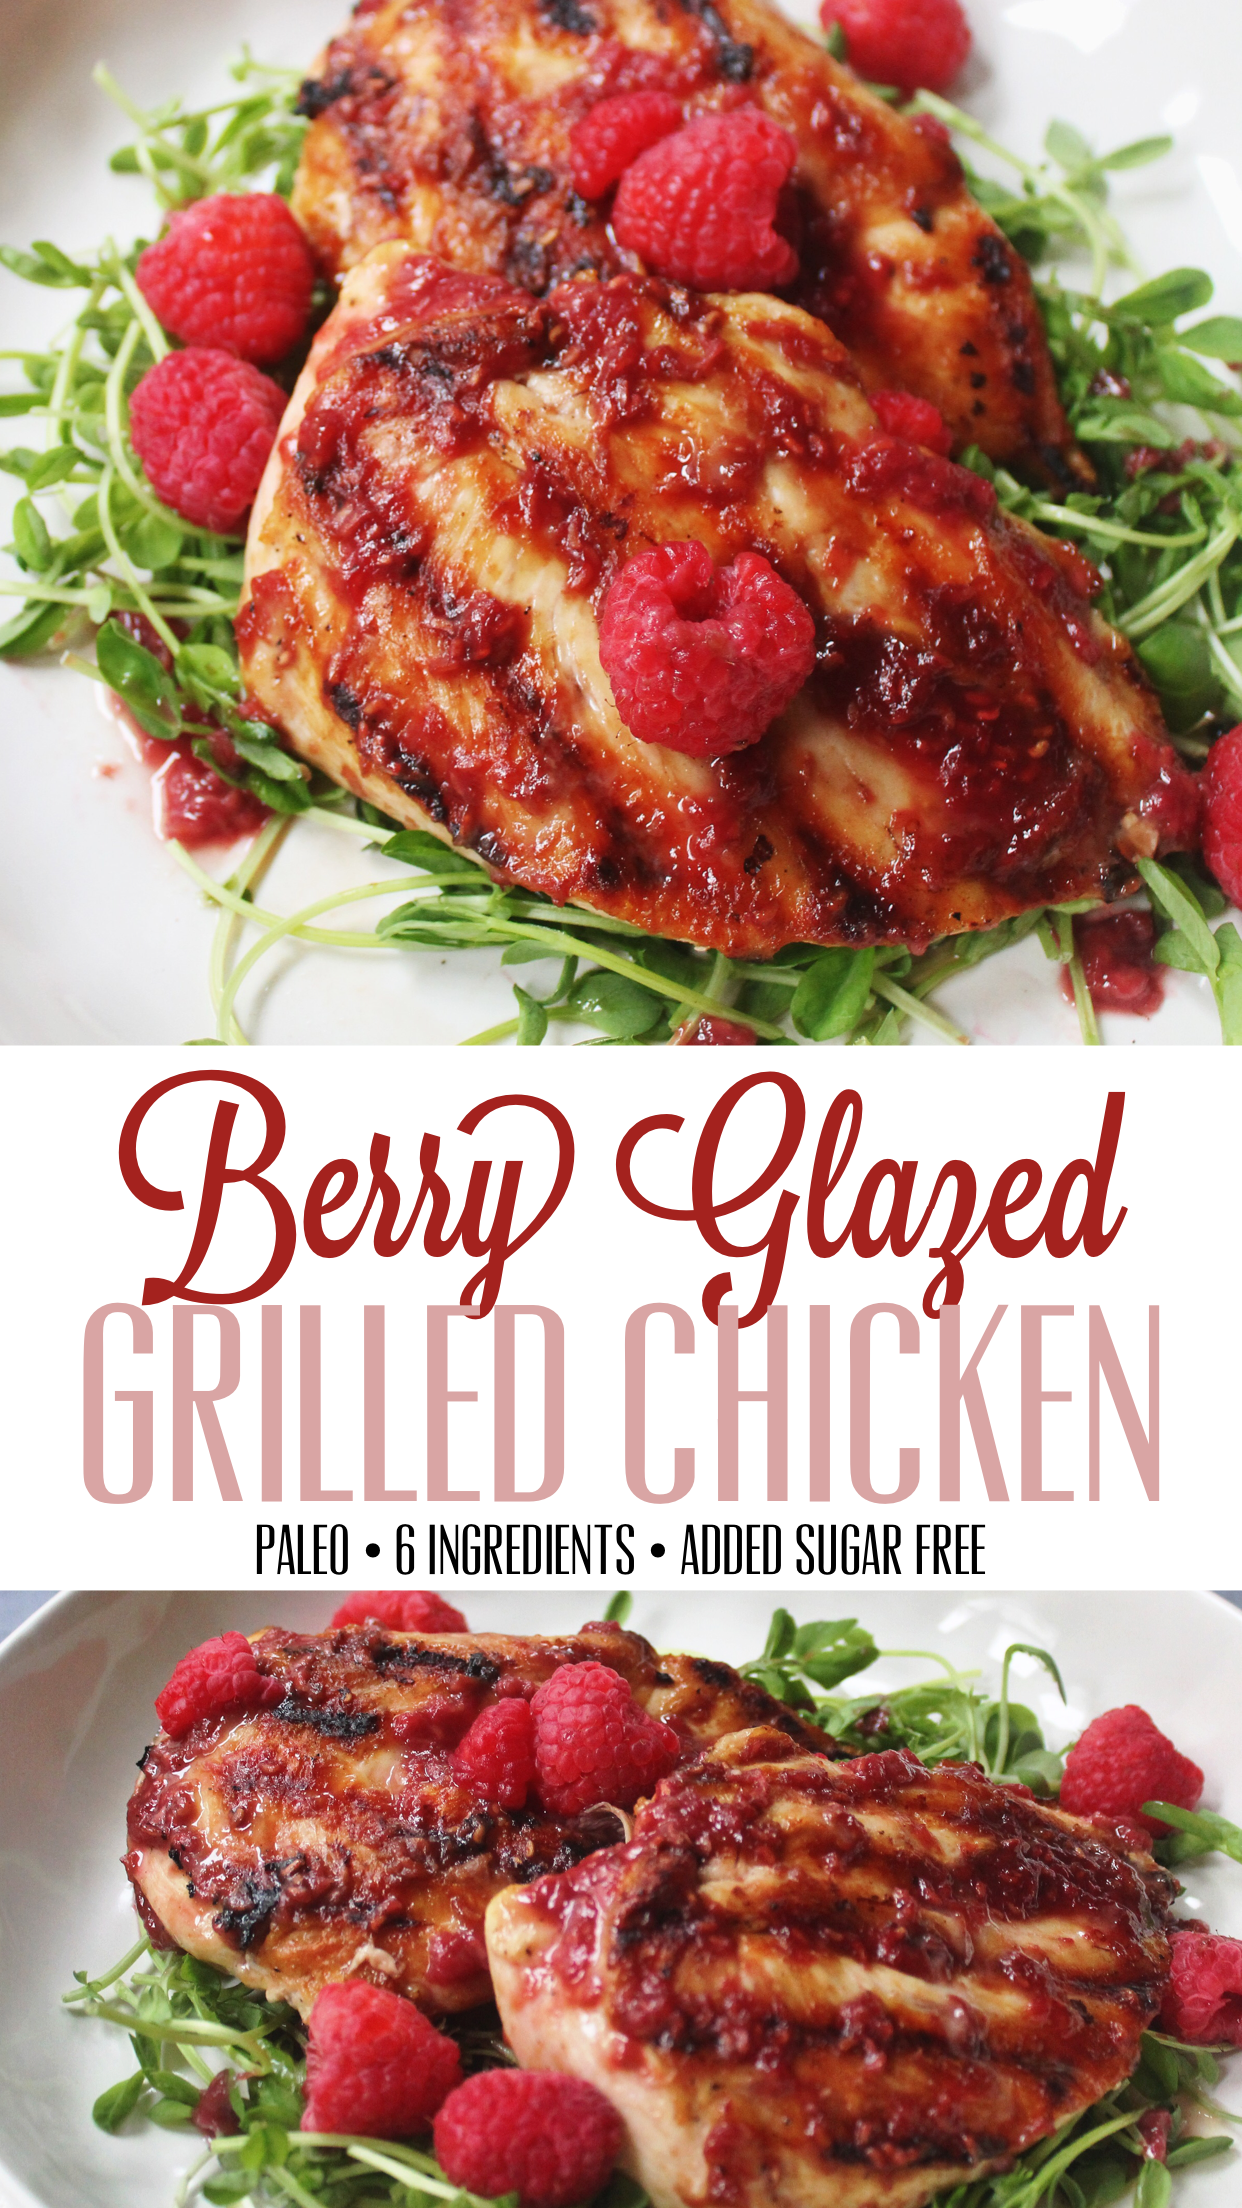 Berry glazed grilled chicken